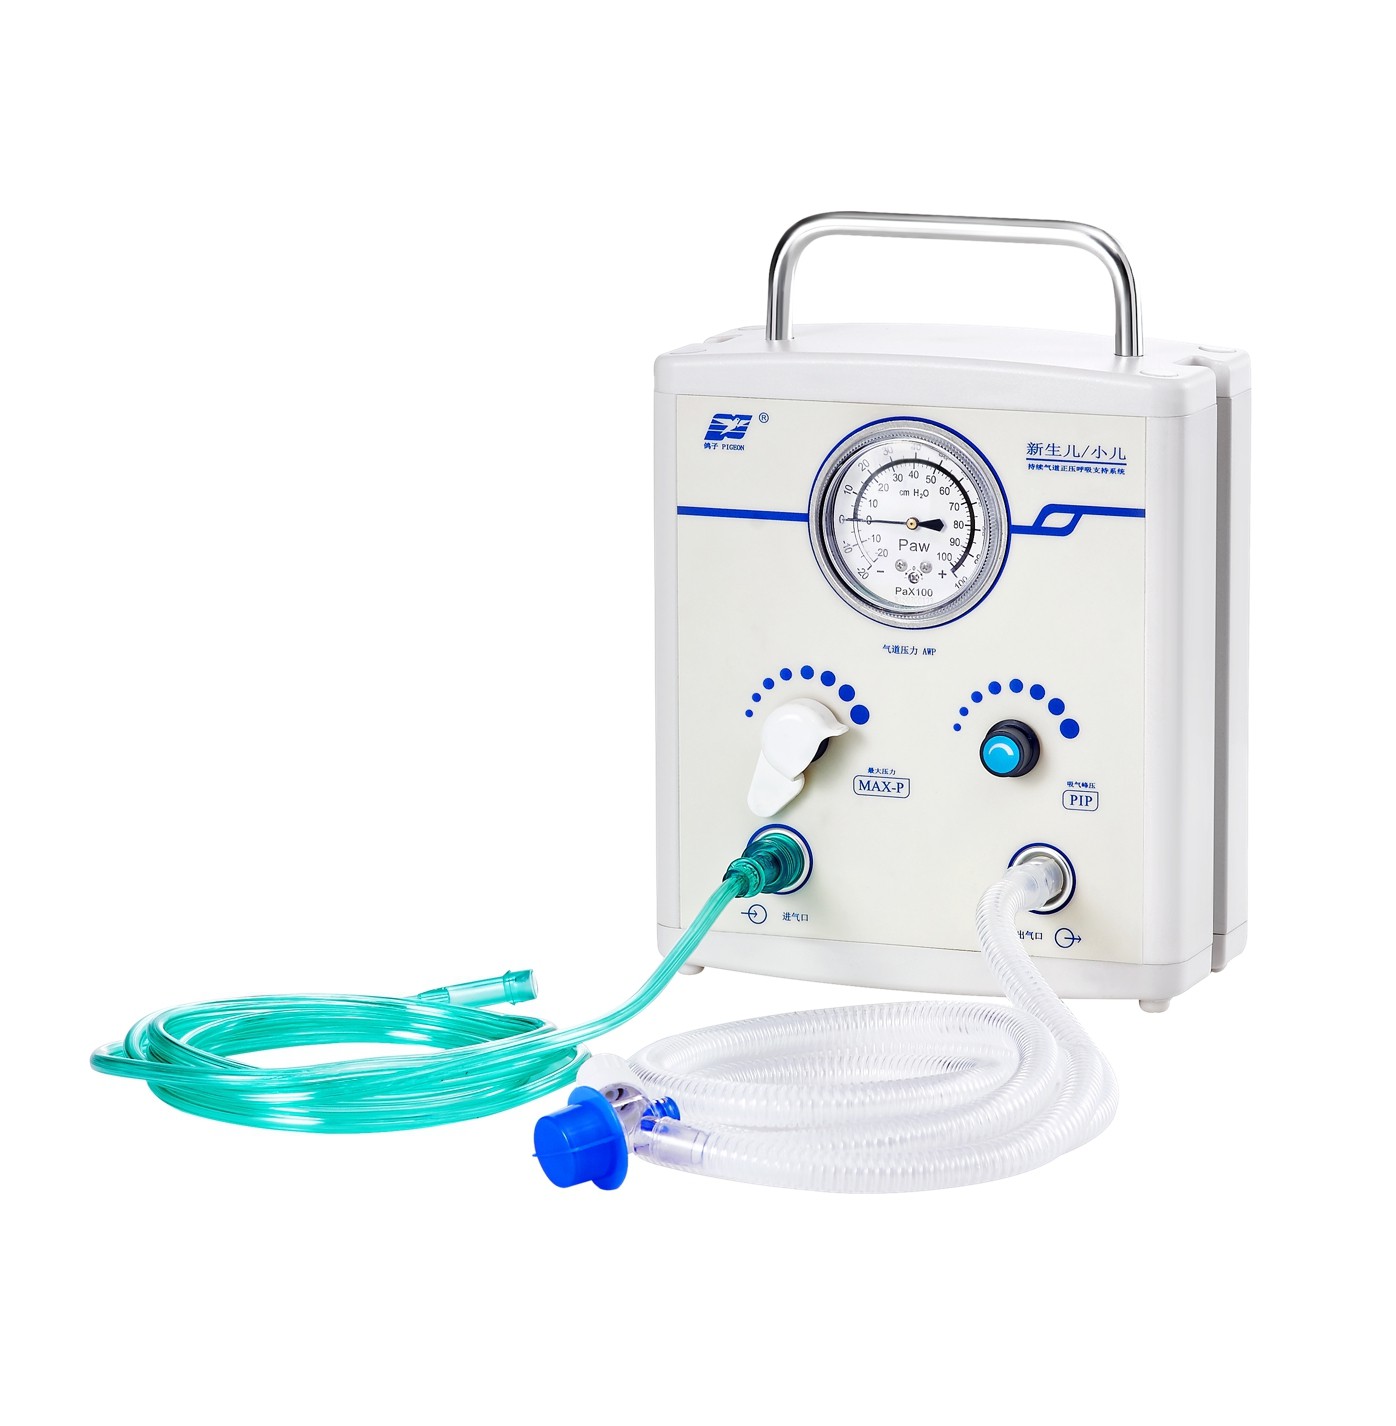 реанимационный аппарат для детей AD3000-TPA Infant Resuscitator